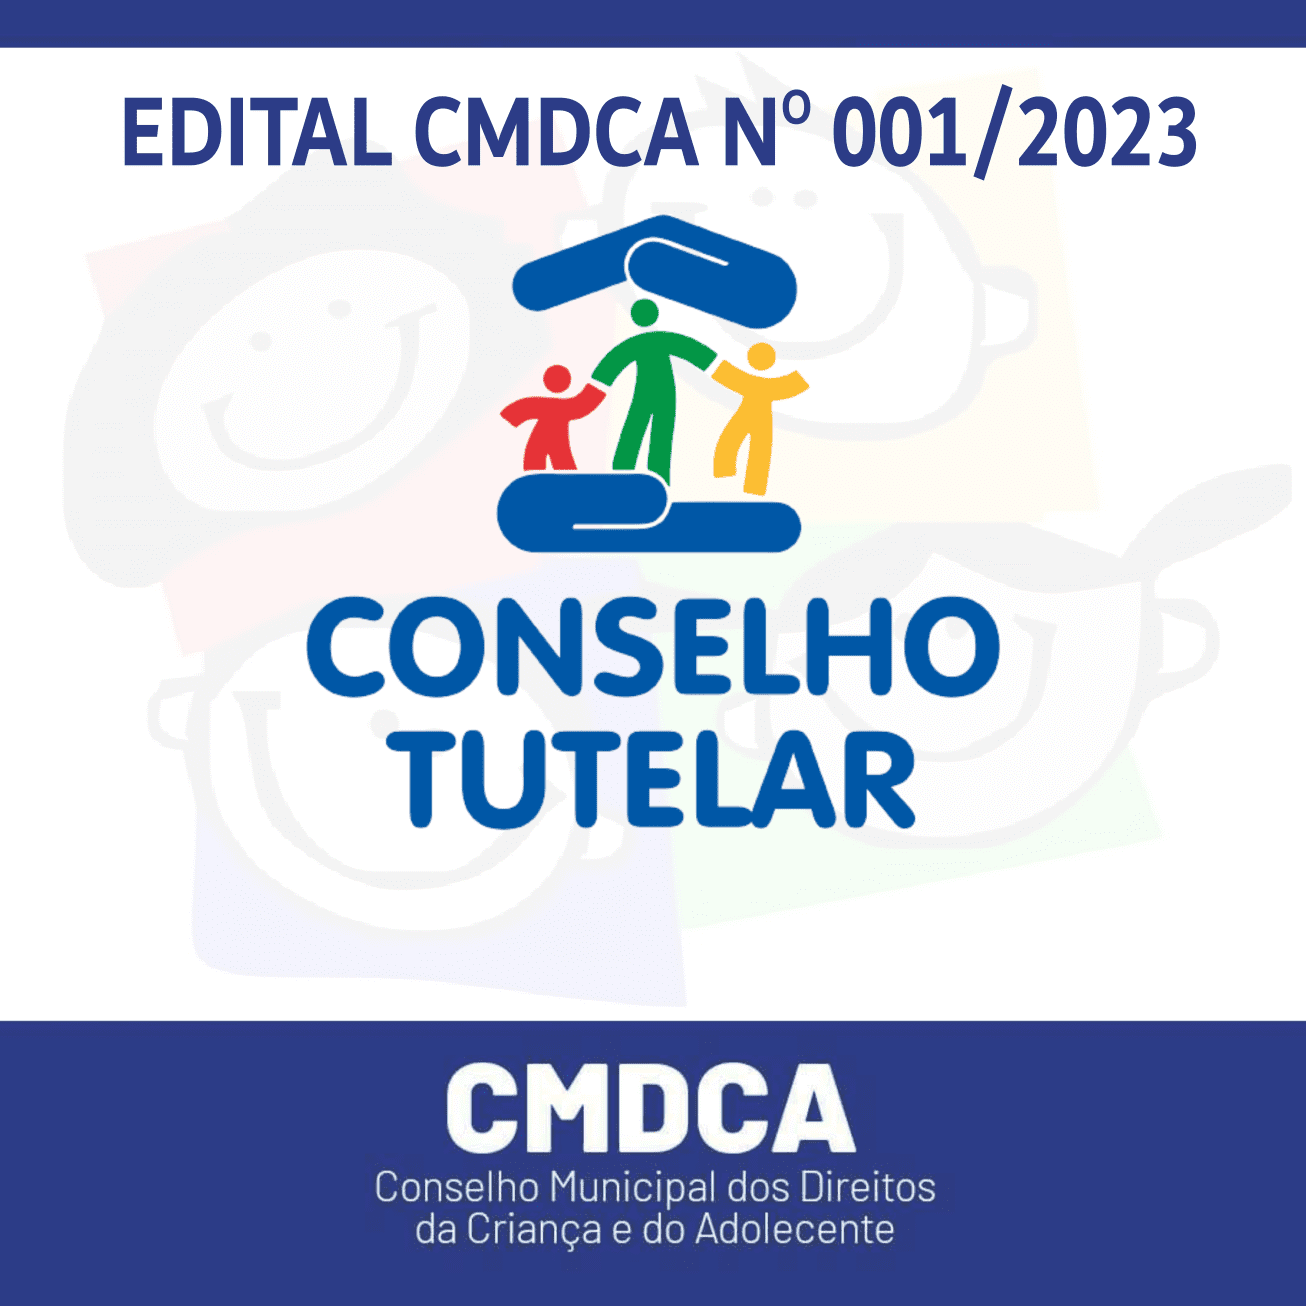 No momento você está vendo EDITAL CMDCA Nº 001/2023 – Processo de escolha do Conselho Tutelar de Rio Vermelho-MG